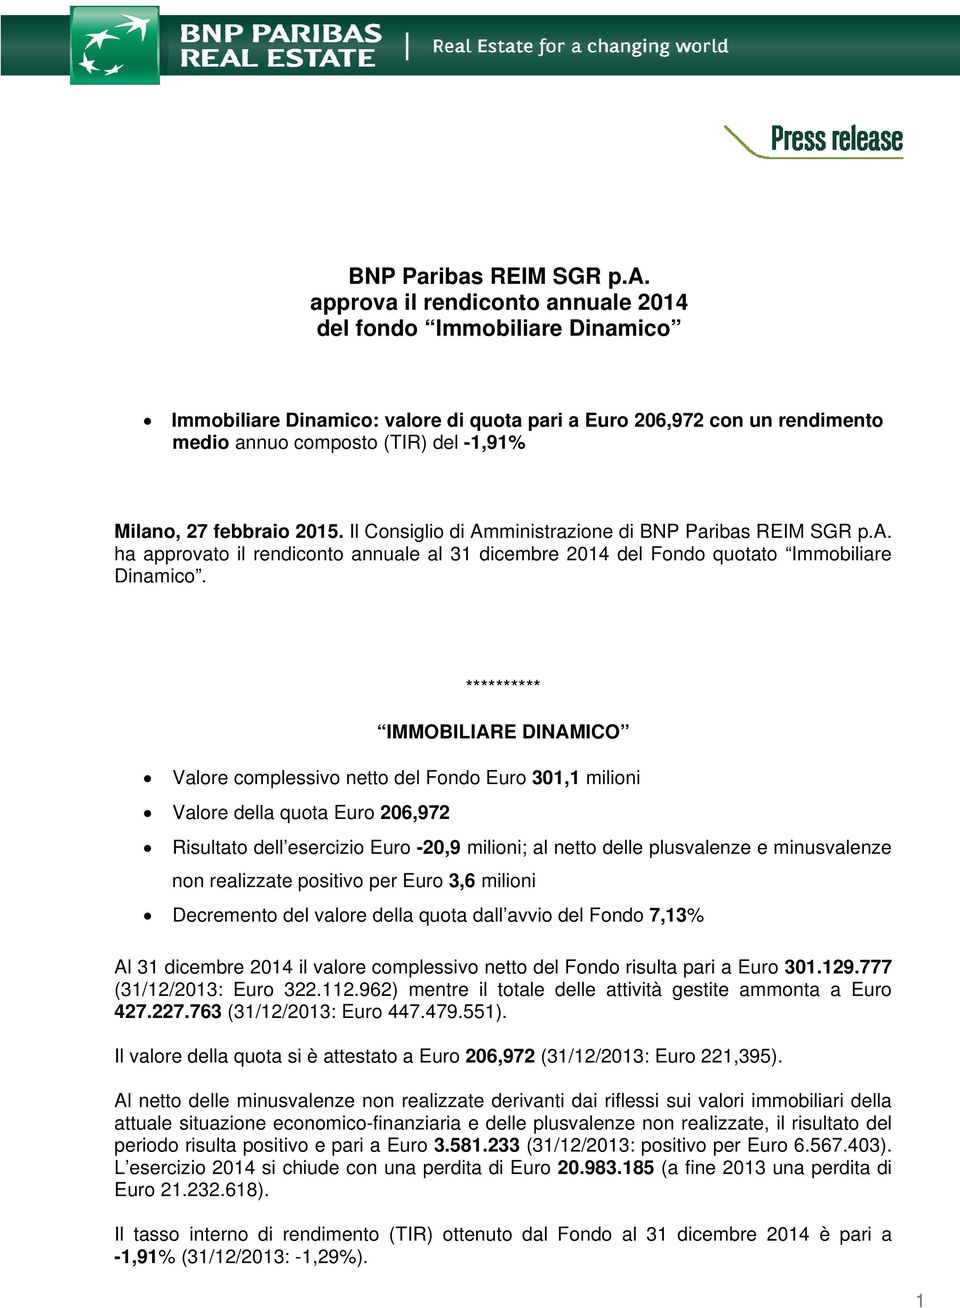 Milano, 27 febbraio 2015. Il Consiglio di Amministrazione di ibas REIM SGR p.a. ha approvato il rendiconto annuale al 31 dicembre 2014 del Fondo quotato Immobiliare Dinamico.